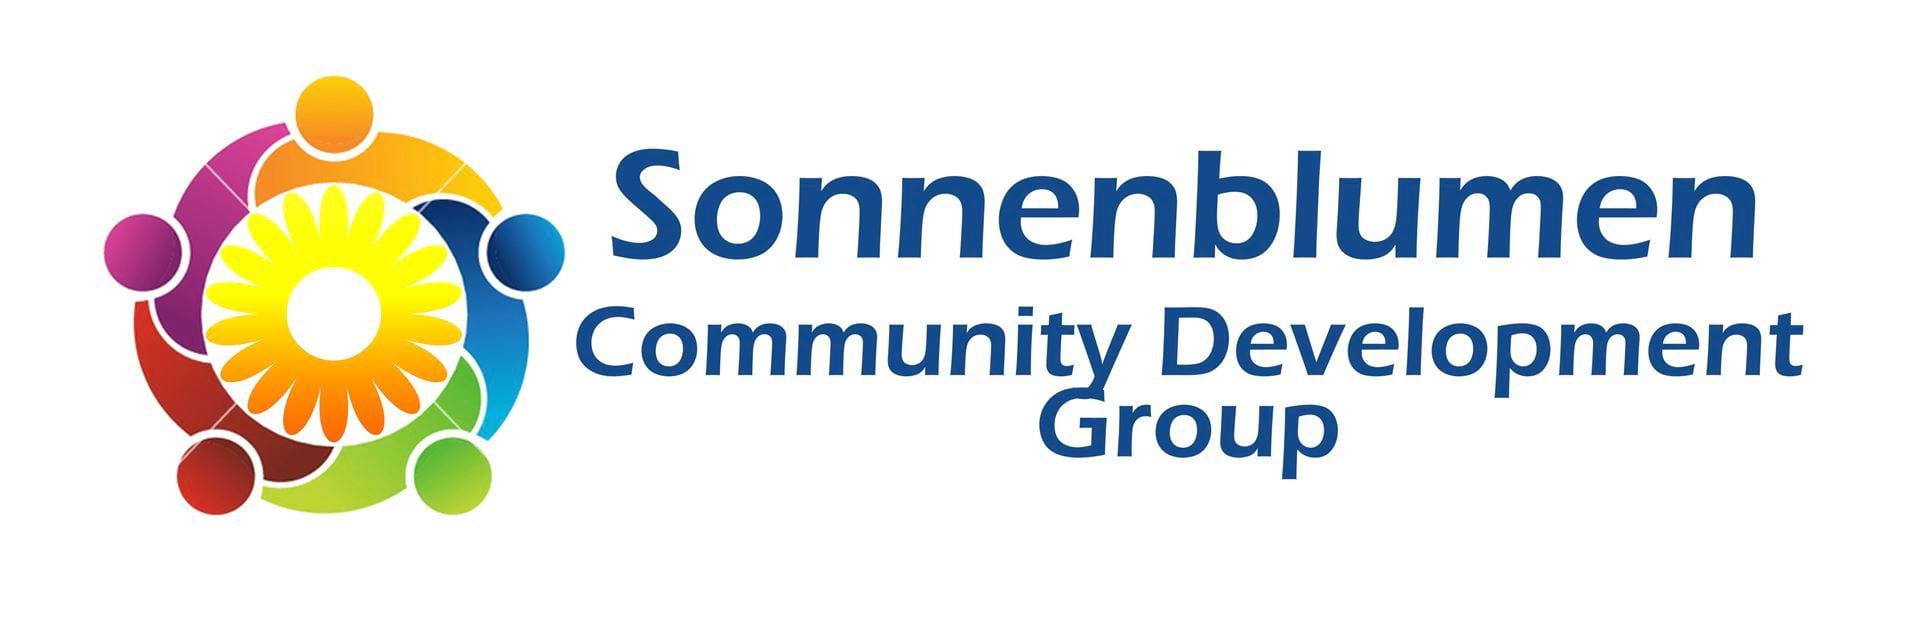 Sonnenblumen Community Development Group e.V. 